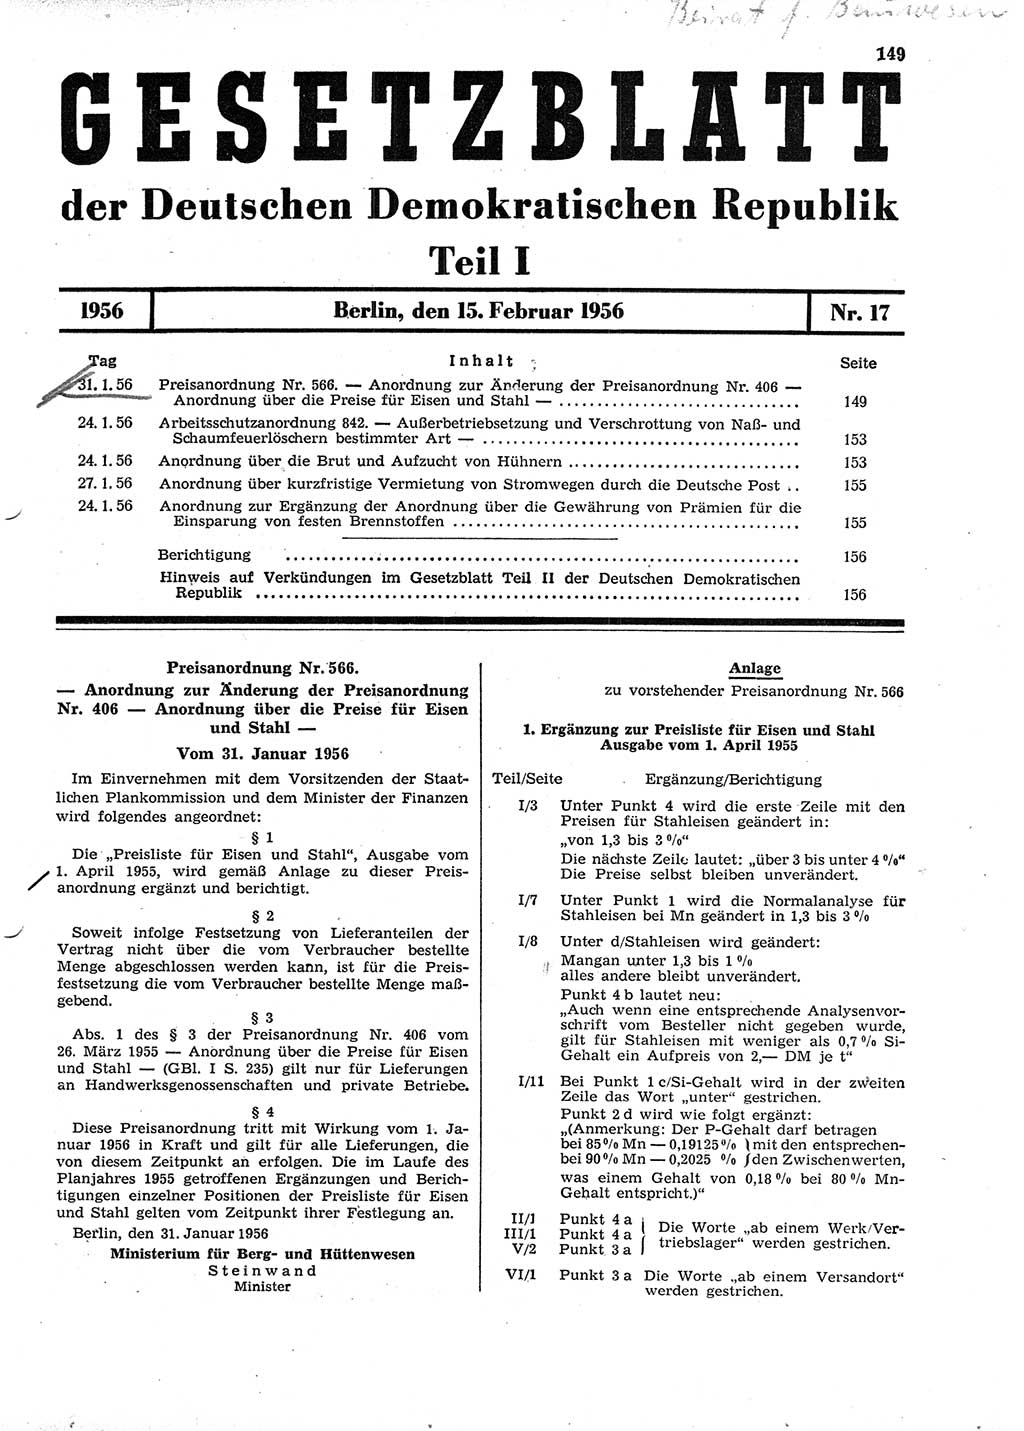 Gesetzblatt (GBl.) der Deutschen Demokratischen Republik (DDR) Teil Ⅰ 1956, Seite 149 (GBl. DDR Ⅰ 1956, S. 149)